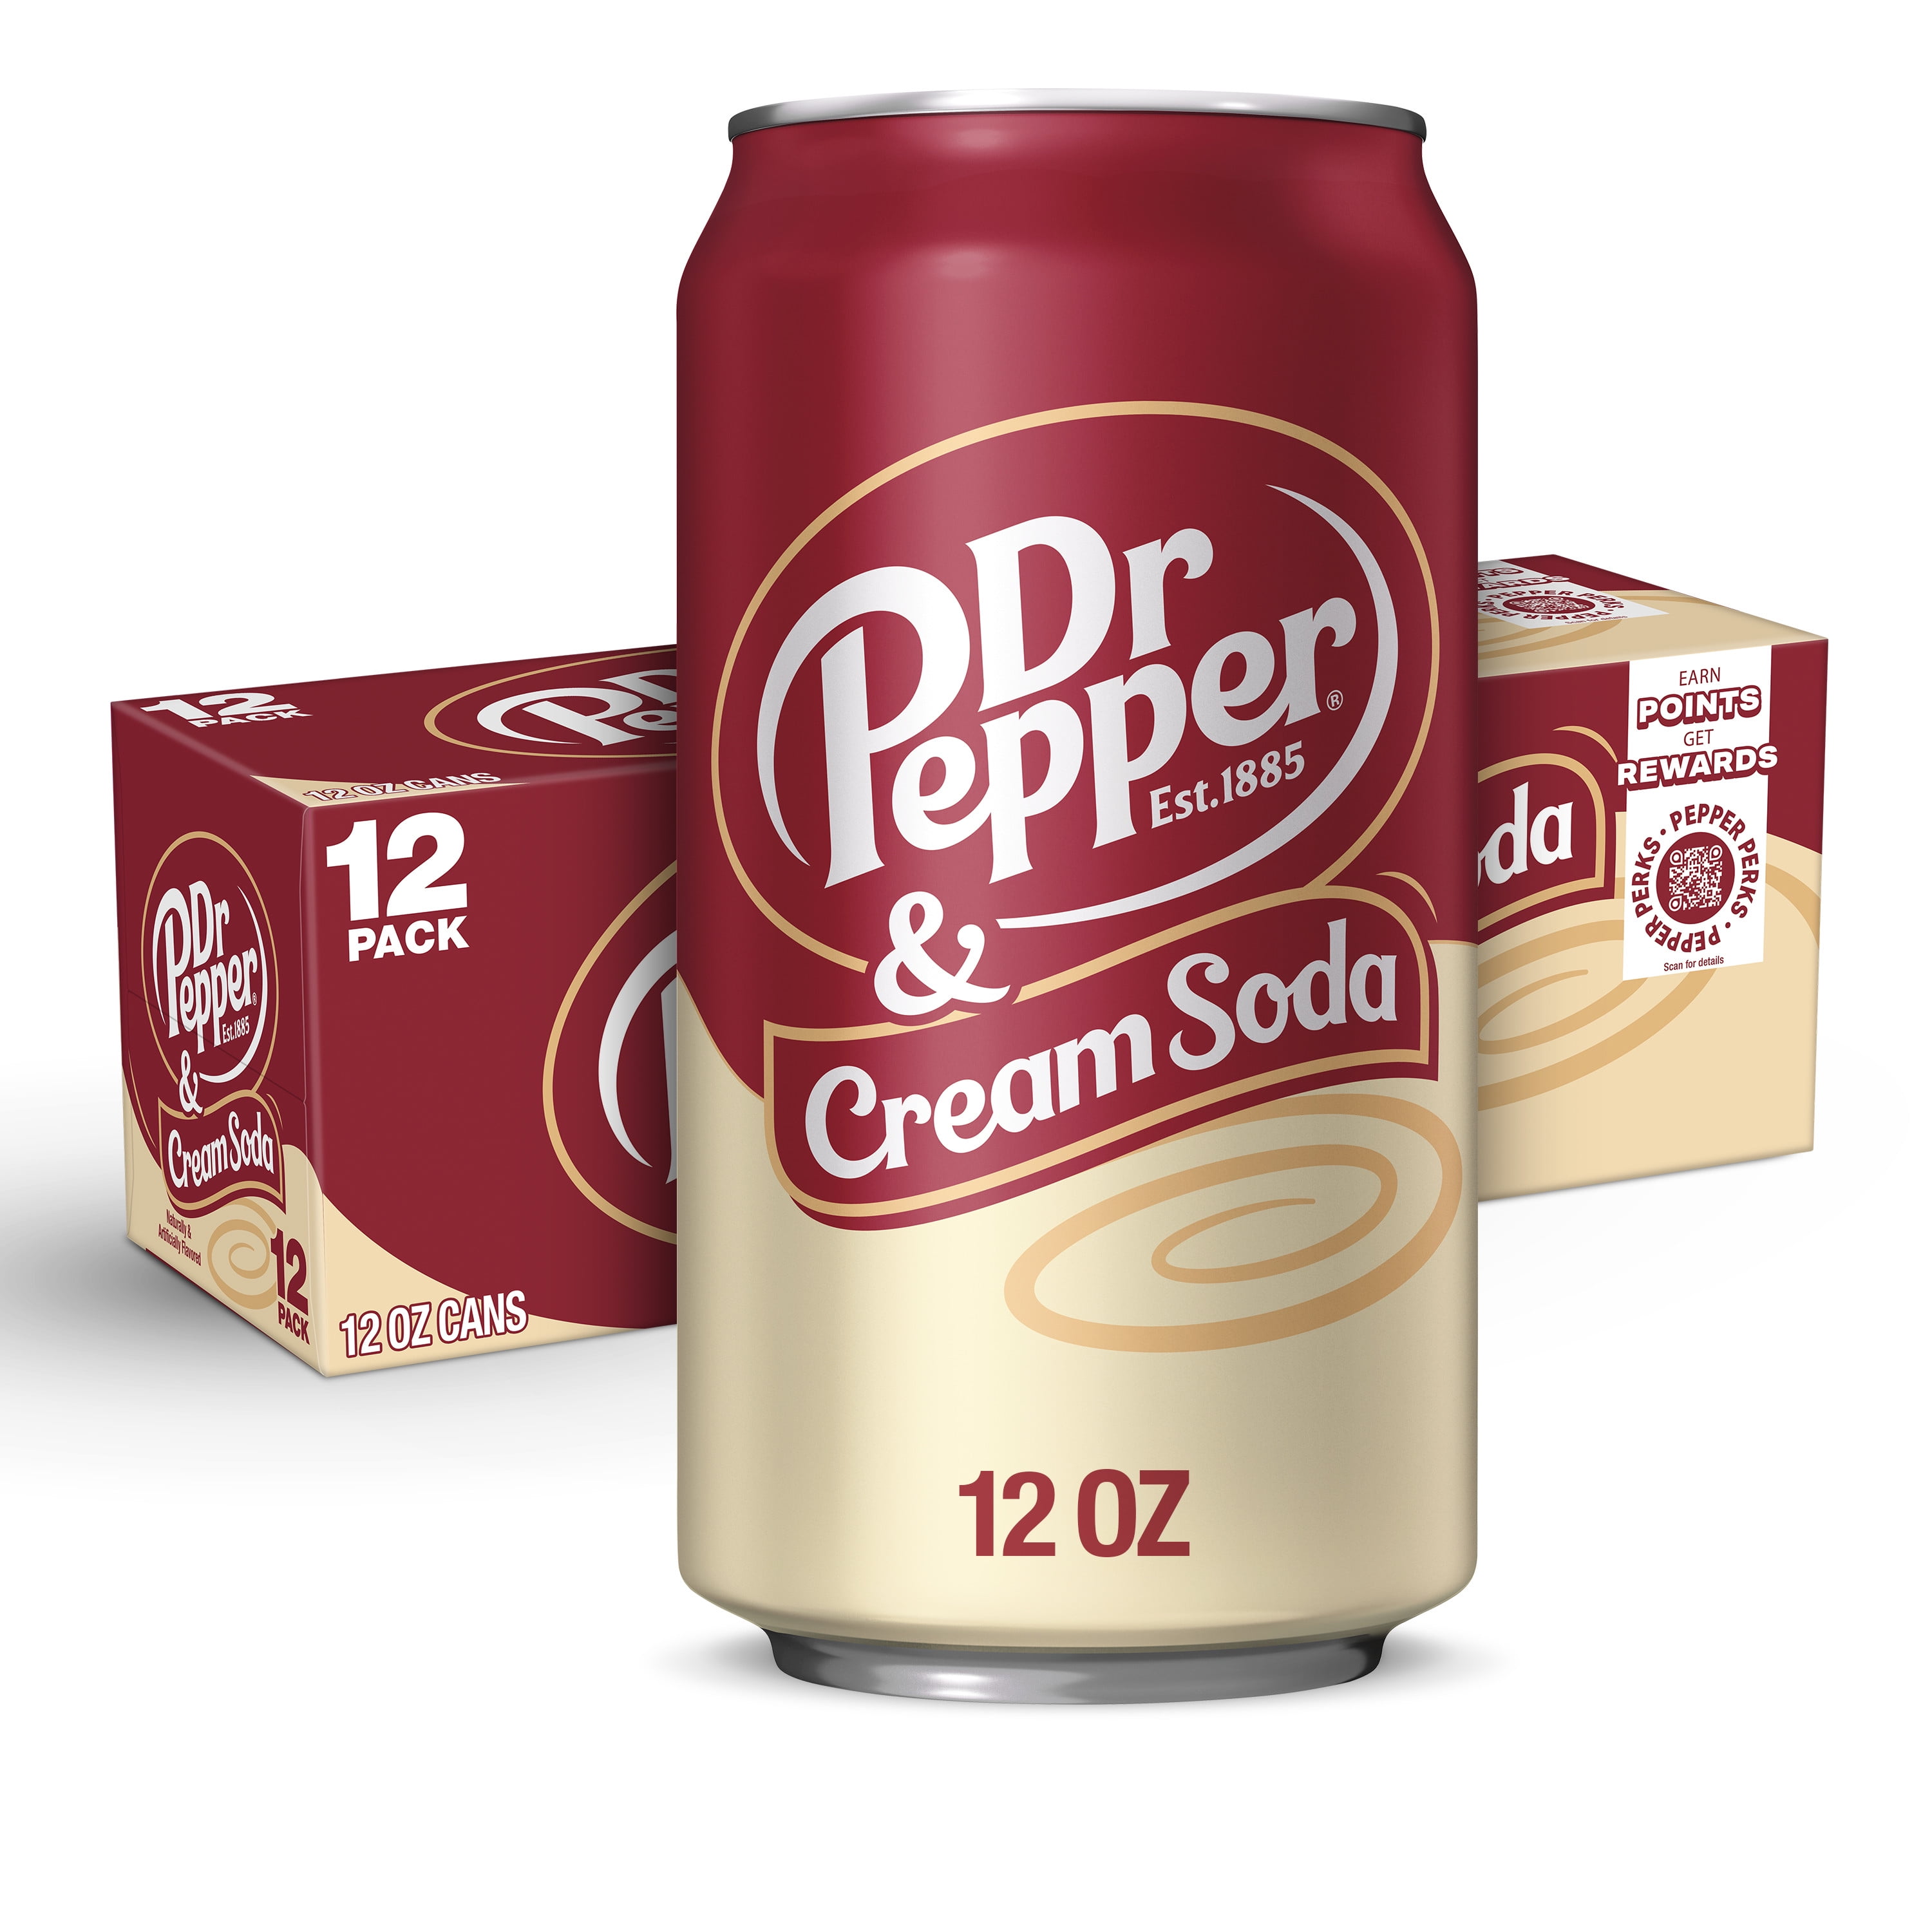 Dr Pepper & Cream Soda, 12 fl oz cans, 12 pack